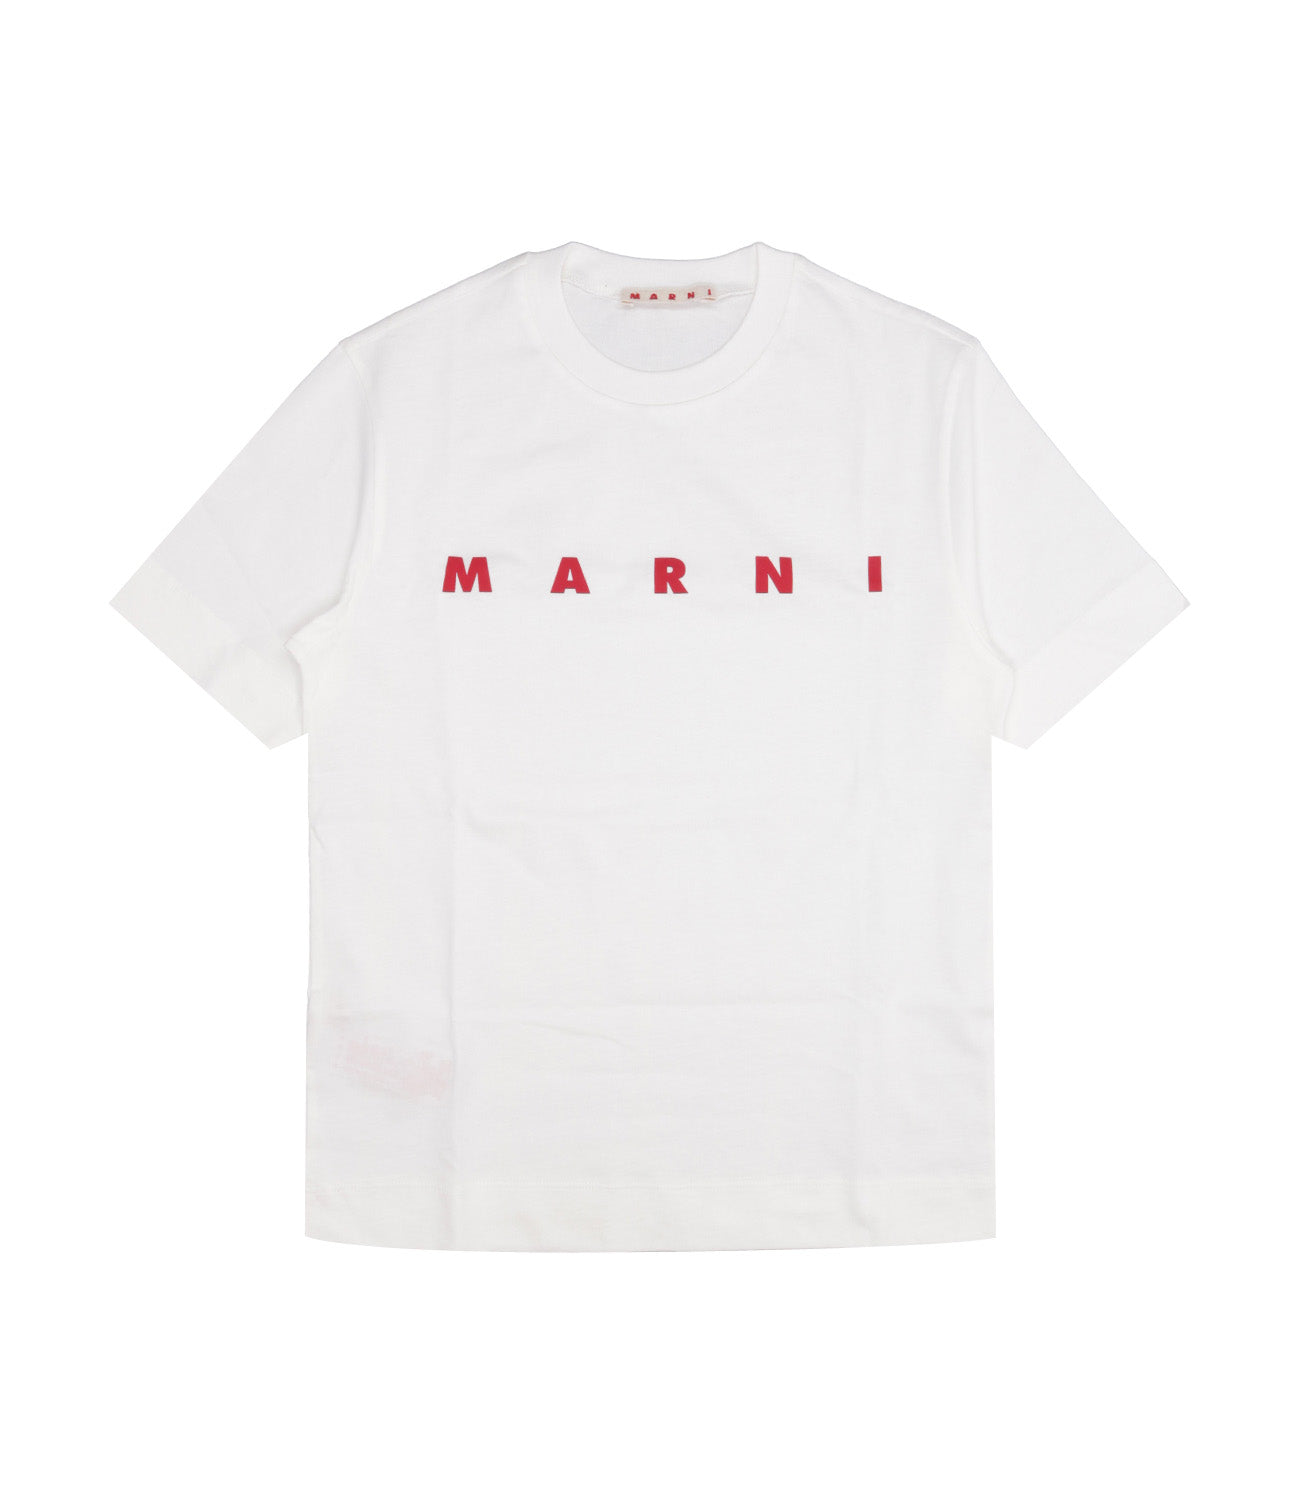 Marni Kids | White T-Shirt